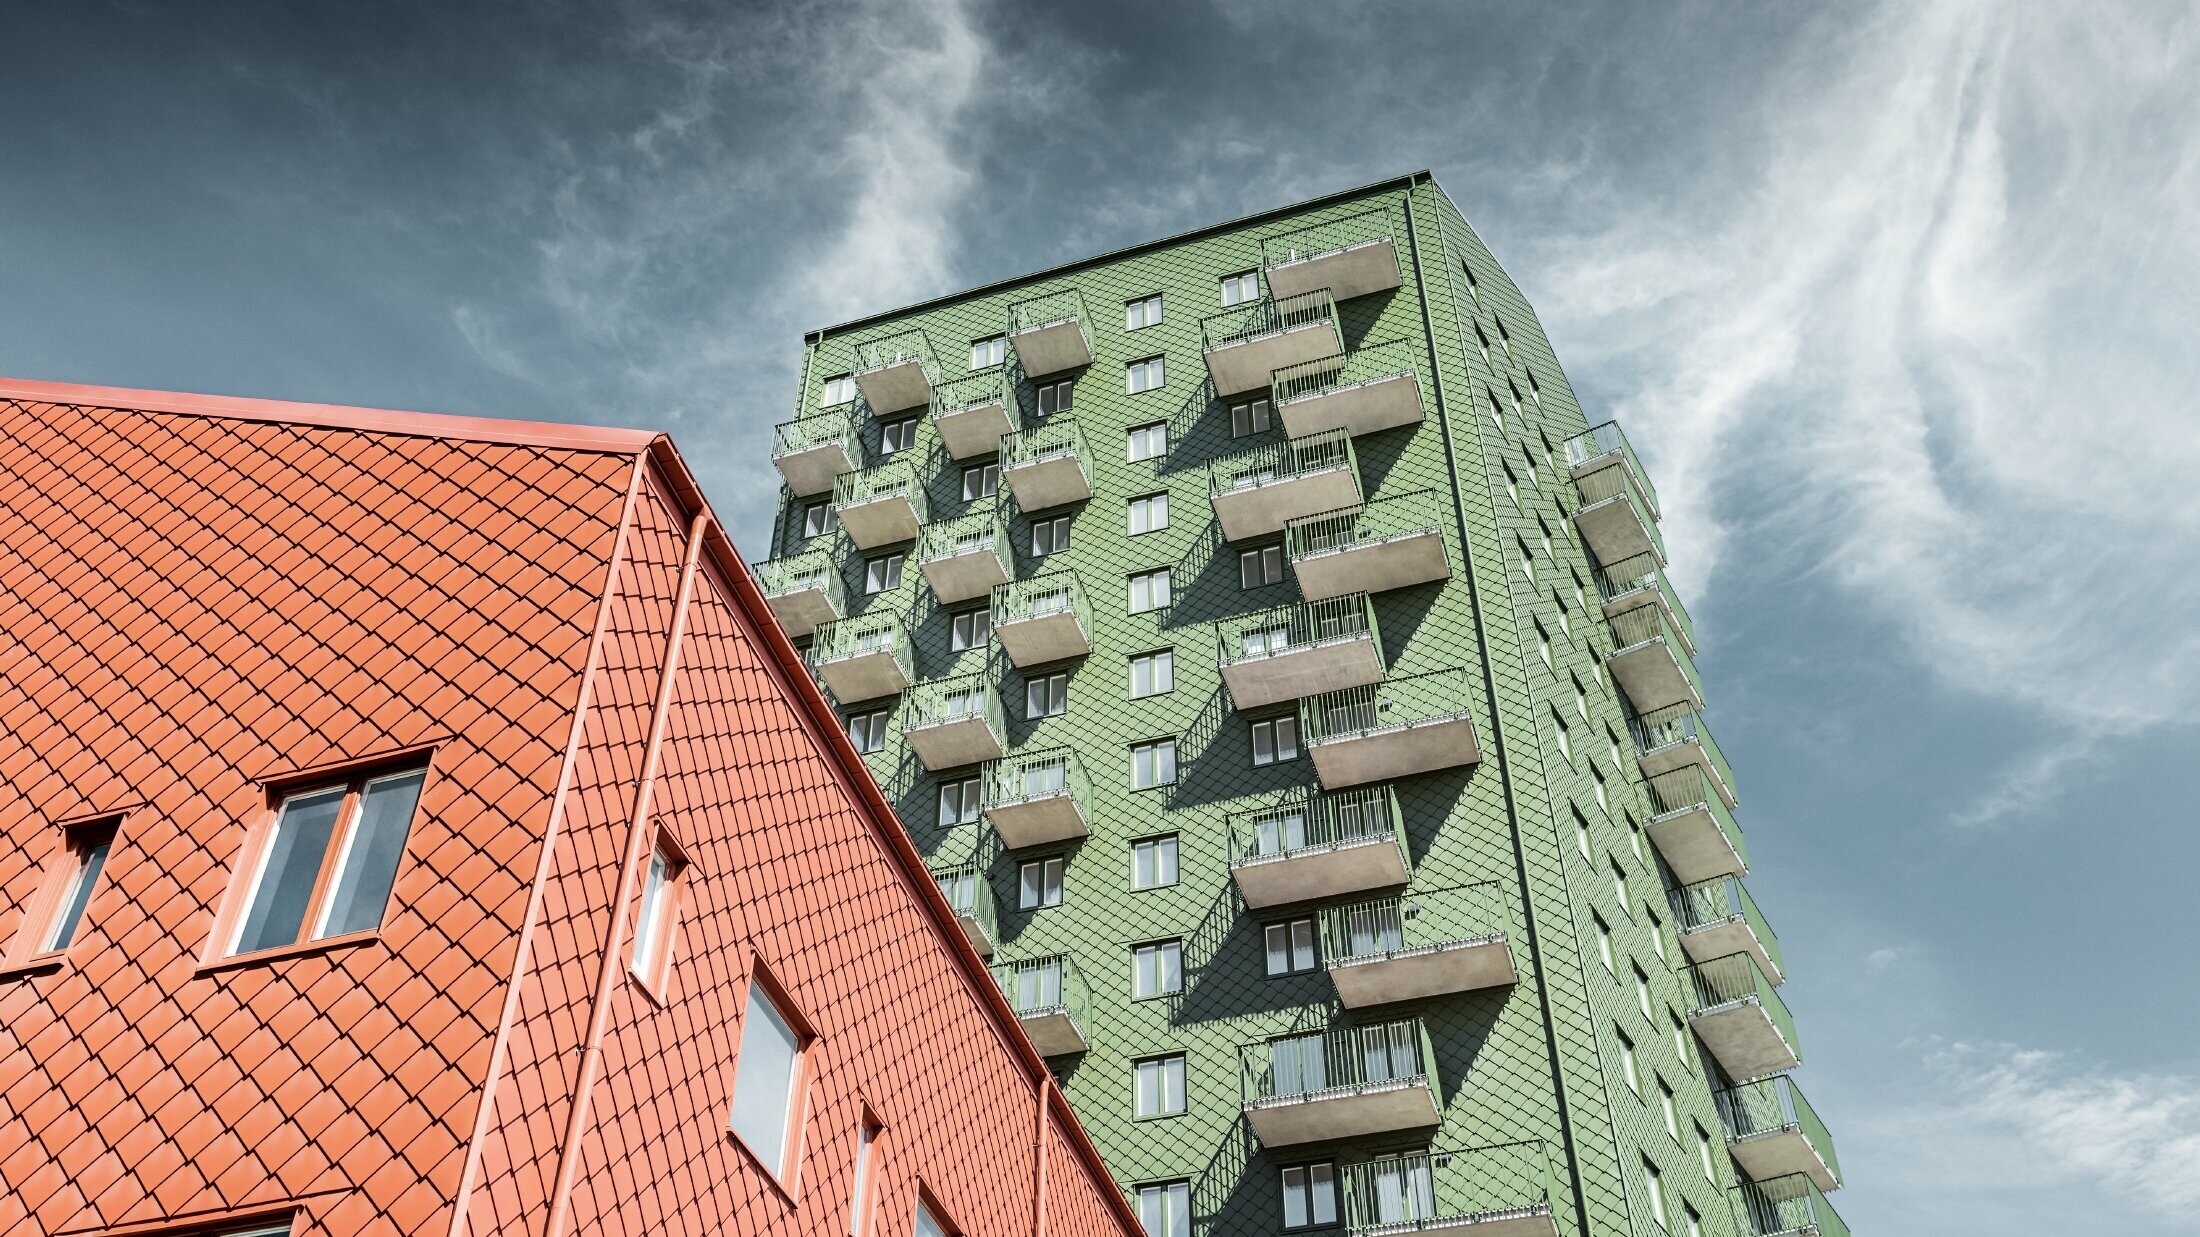 Neboderi s balkonima s fasadom oblikovanom PREFA zidnim rombom 29 × 29 u maslinasto zelenoj i ciglasto crvenoj boji